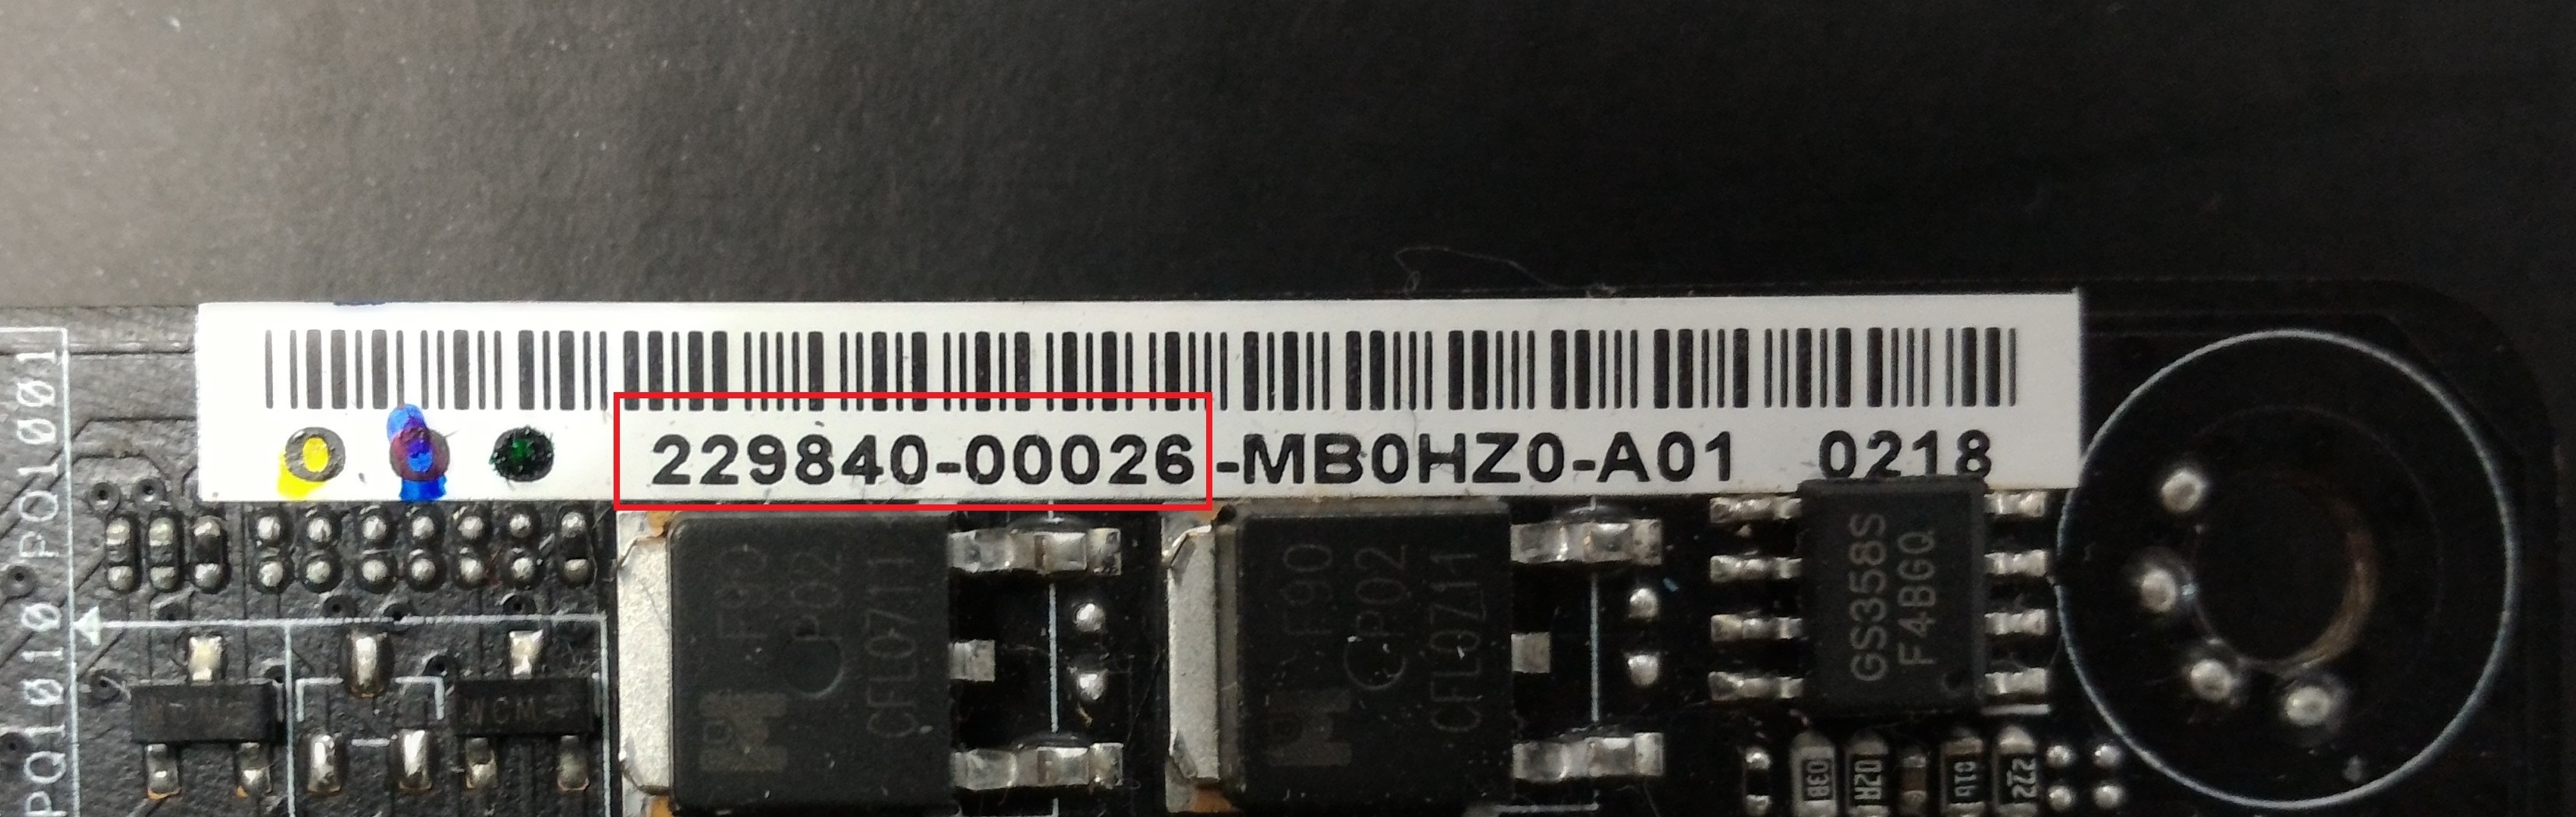 motherboard serial number msi